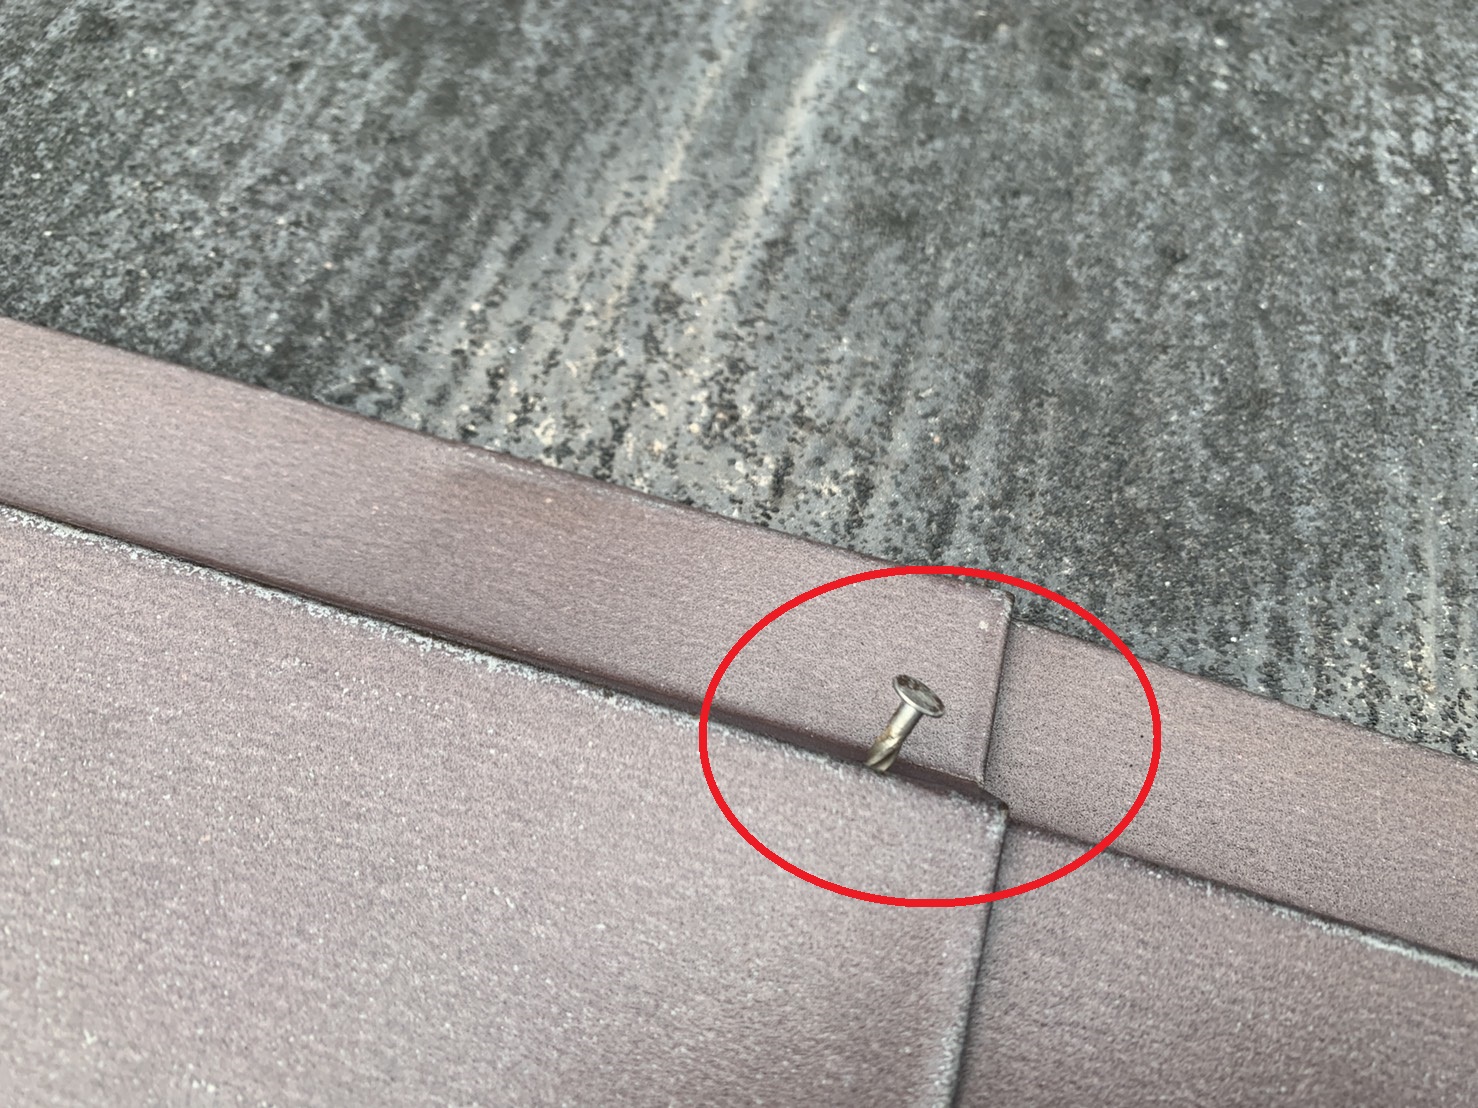 明石市での屋根調査で棟板金を固定する釘が抜けている様子